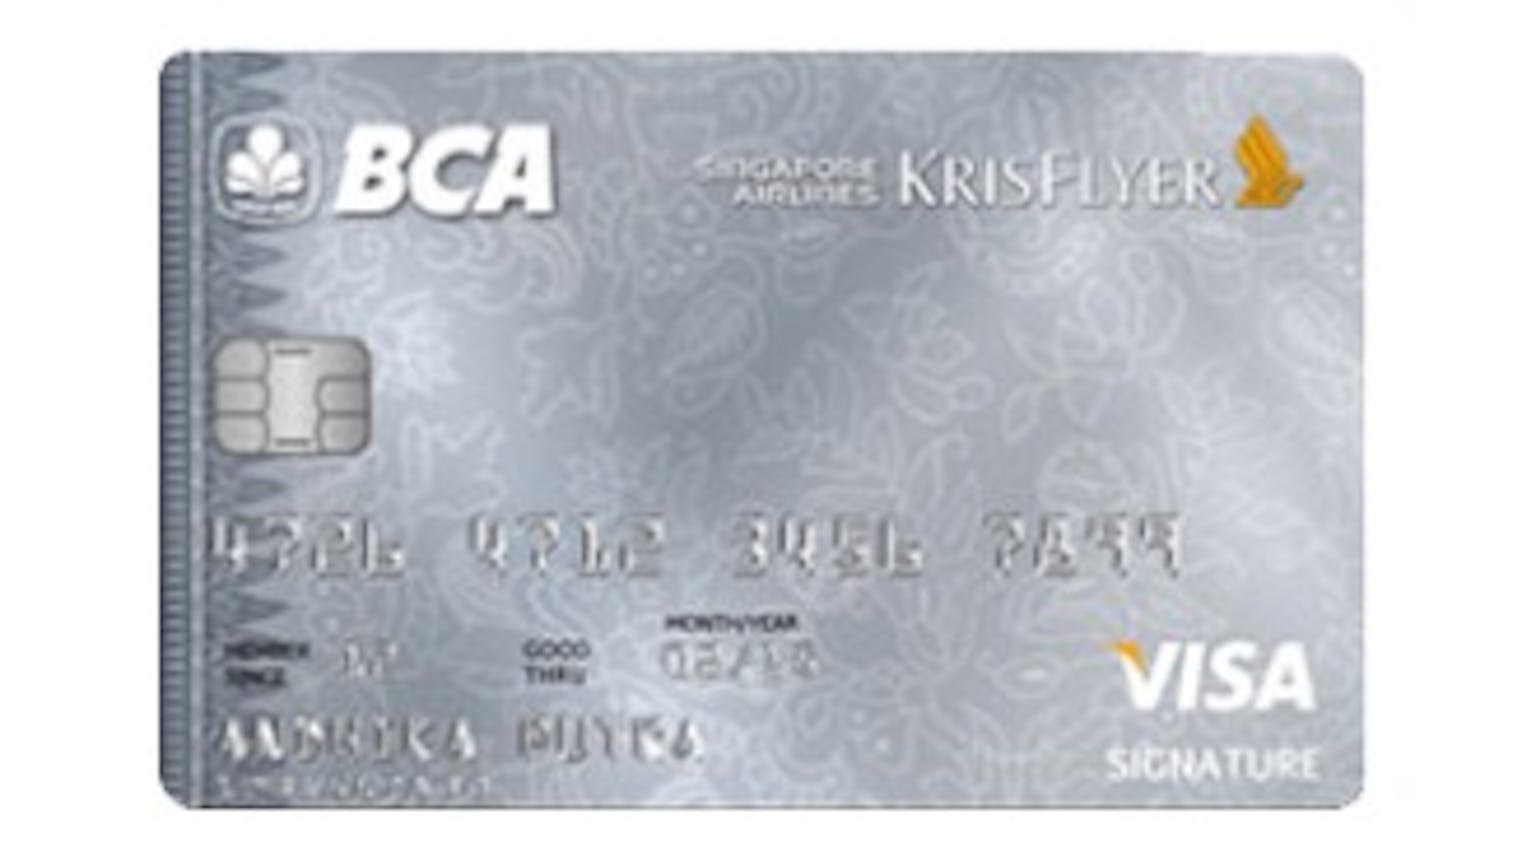 BCA Singapore Airlines KrisFlyer VISA Signature